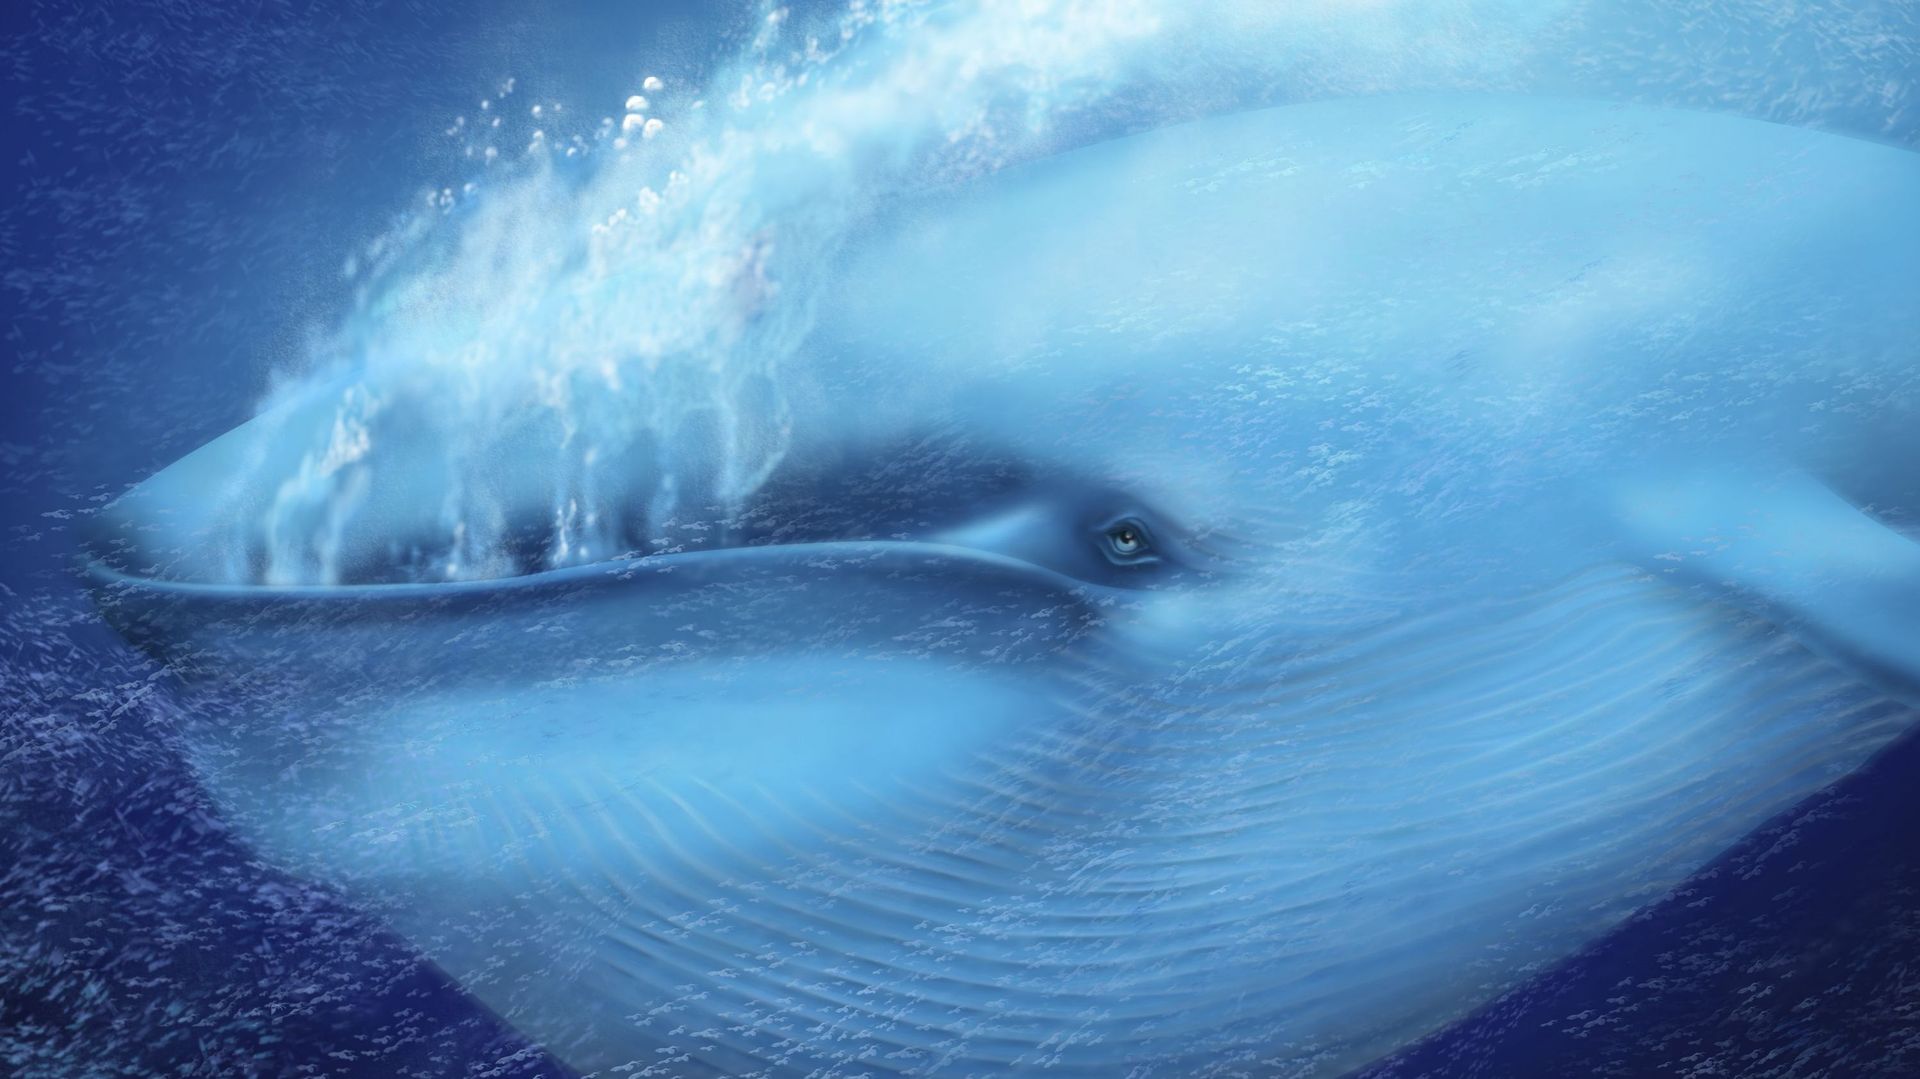 Les baleines bleues absorberaient jusqu’à 10 millions de morceaux de microplastiques par jour, selon une étude.